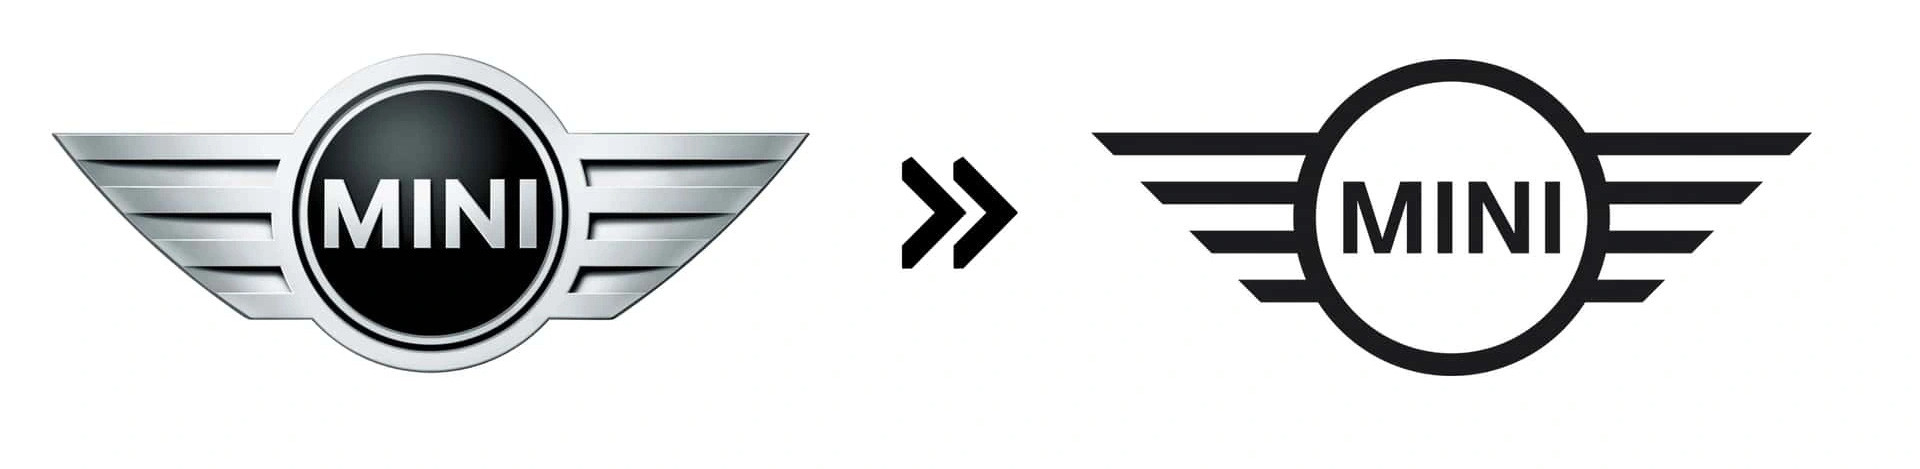 Mini (2015): Mini chính là thương hiệu đầu tiên đổi logo sang phong cách 